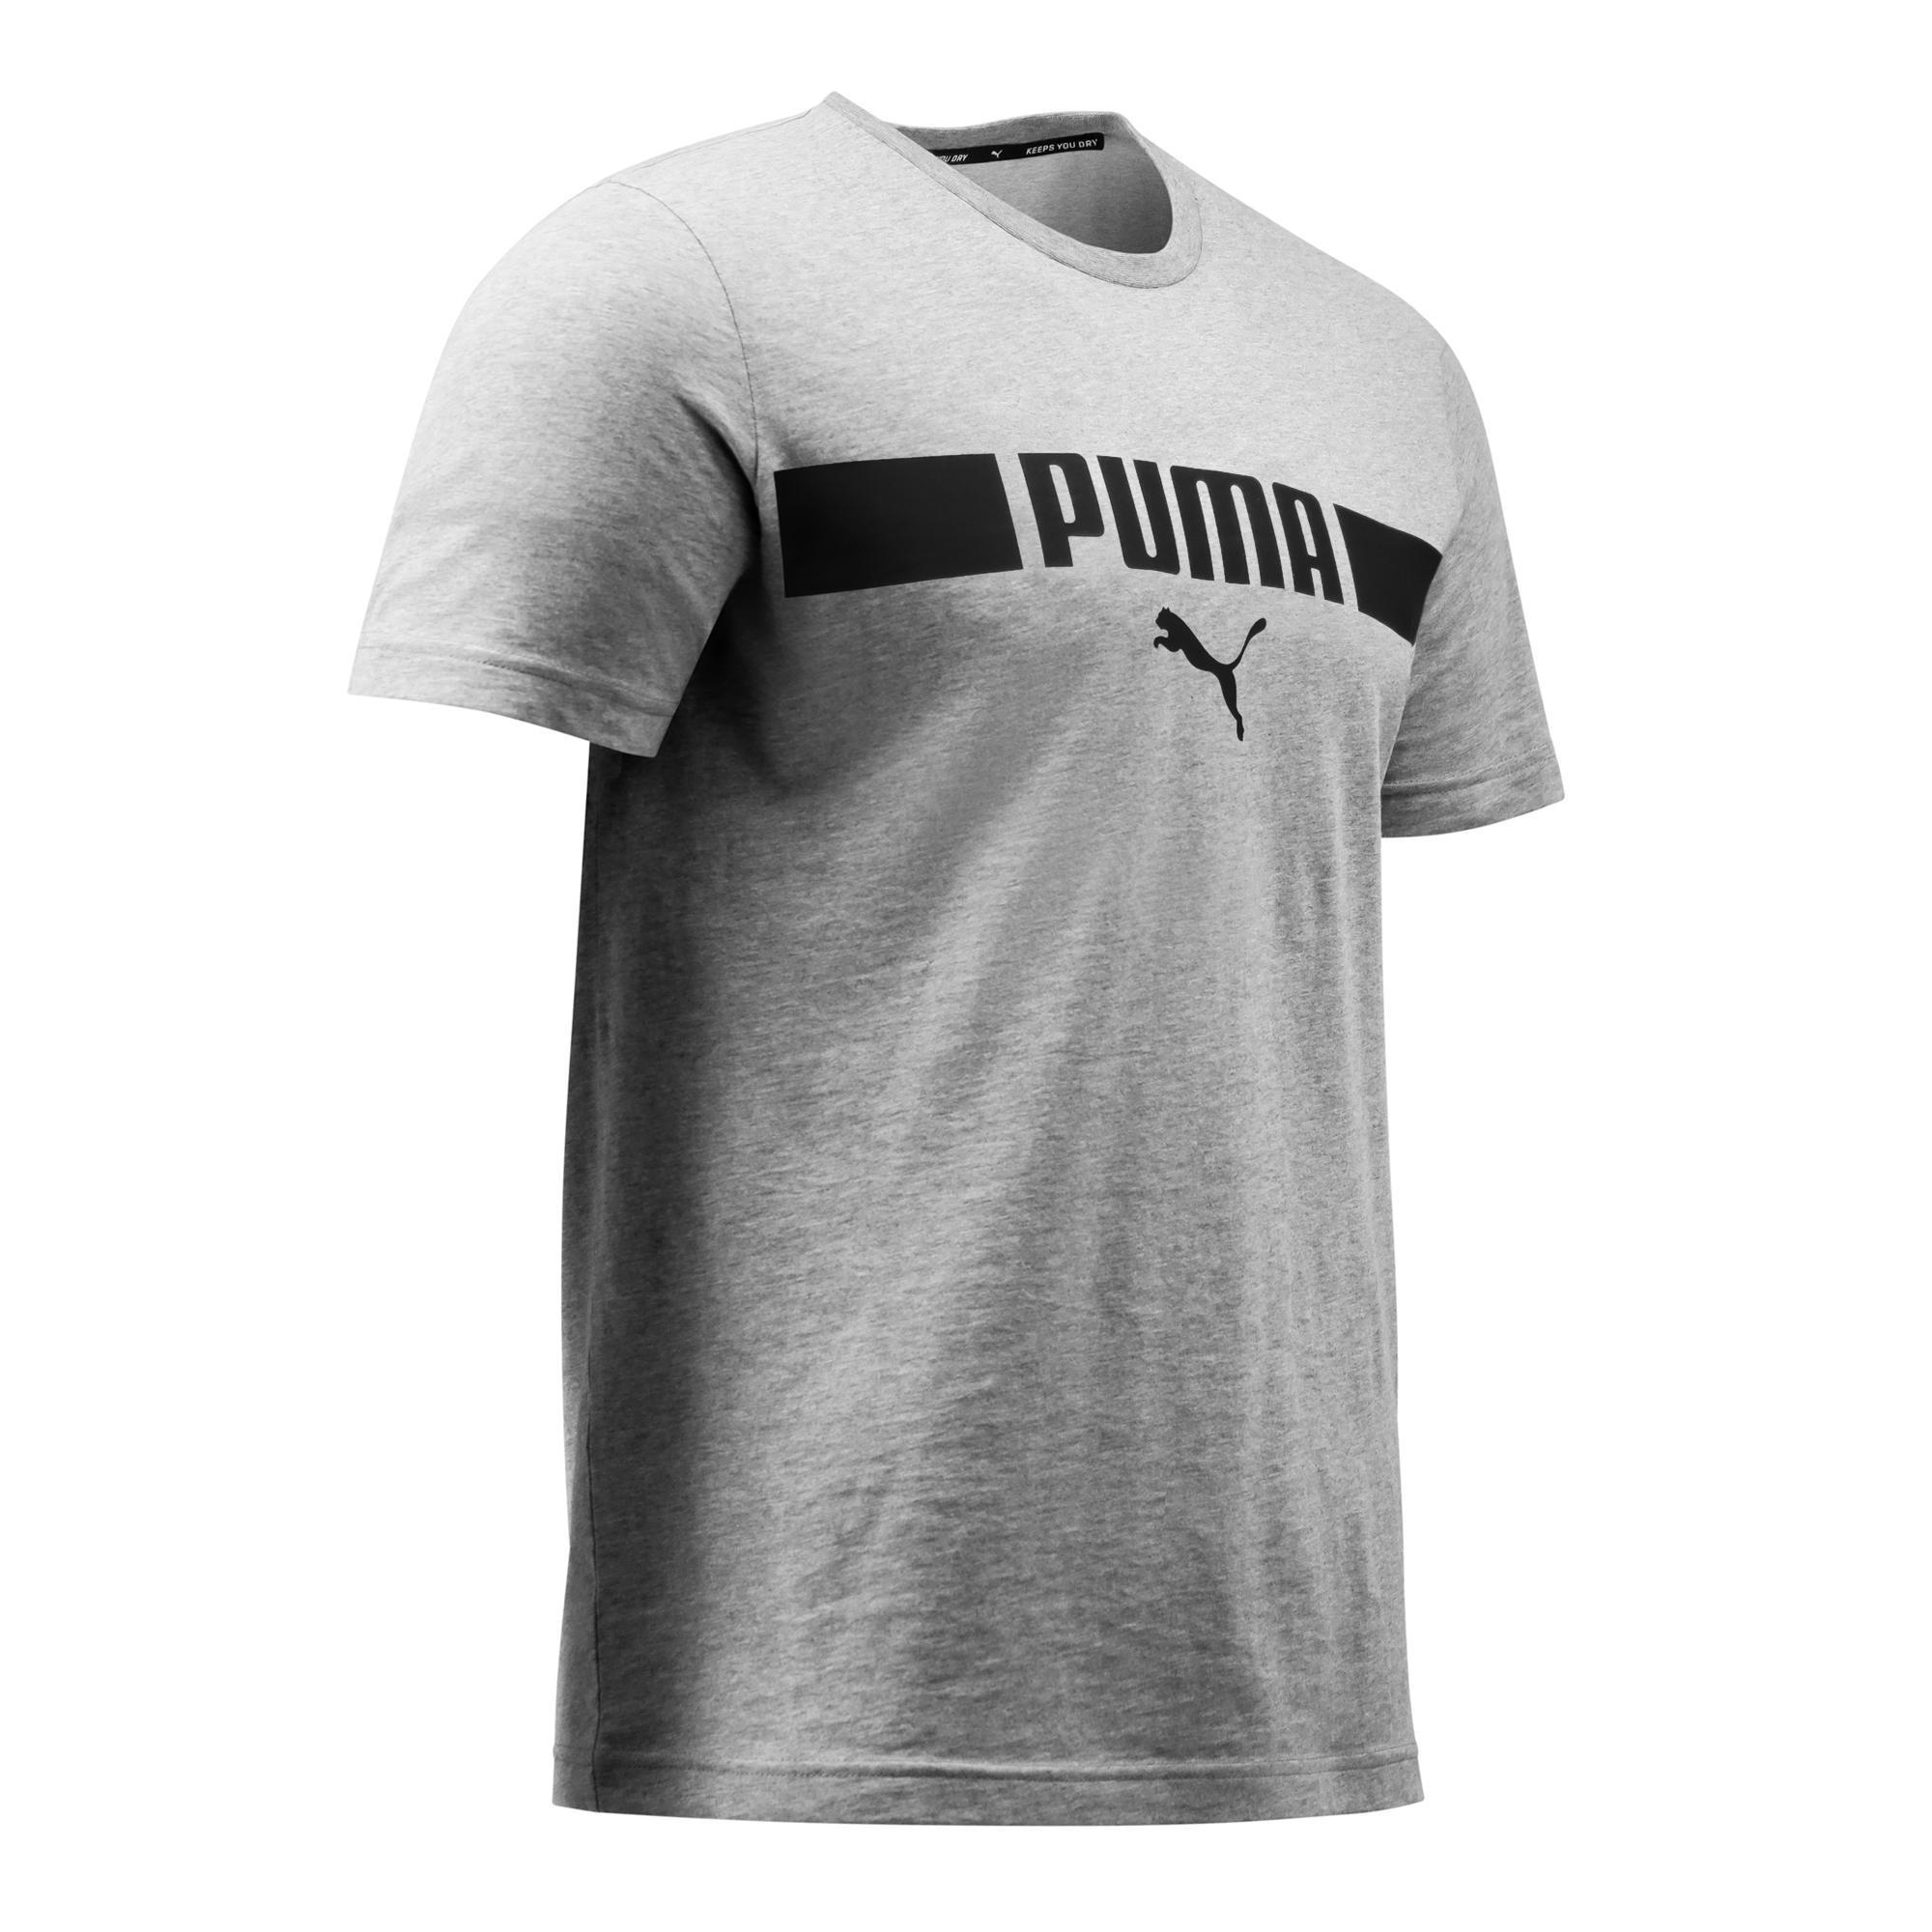 Camiseta Puma hombre gris con logotipo PUMA | Decathlon